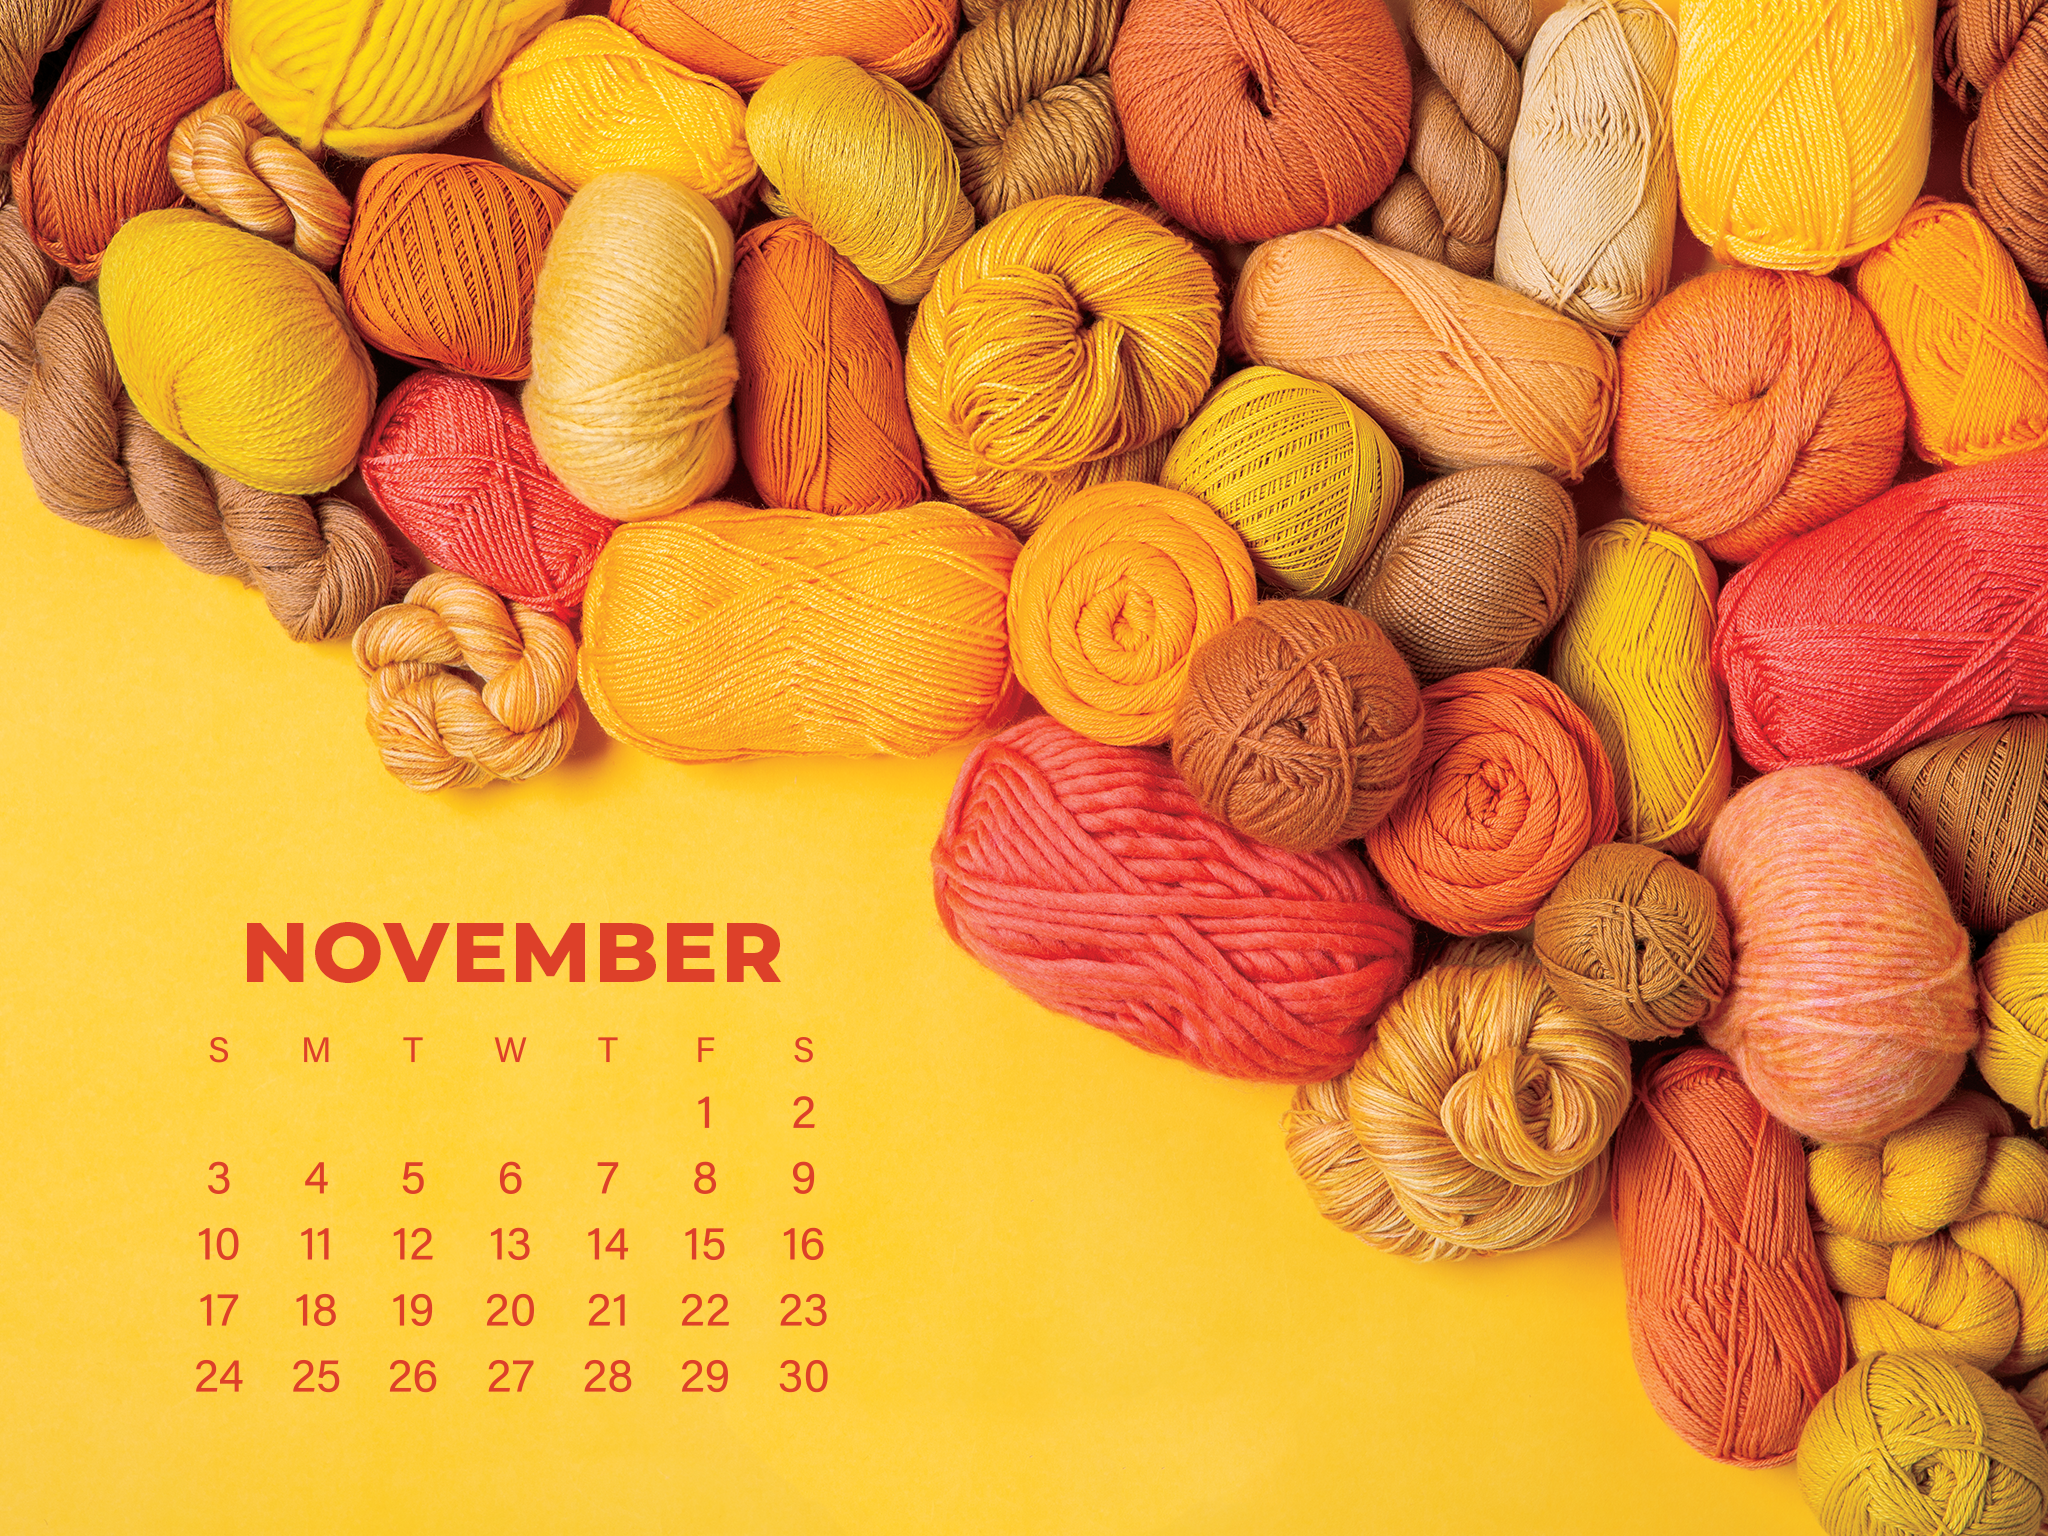 November Calendar Wallpaper Wecrochet Staff